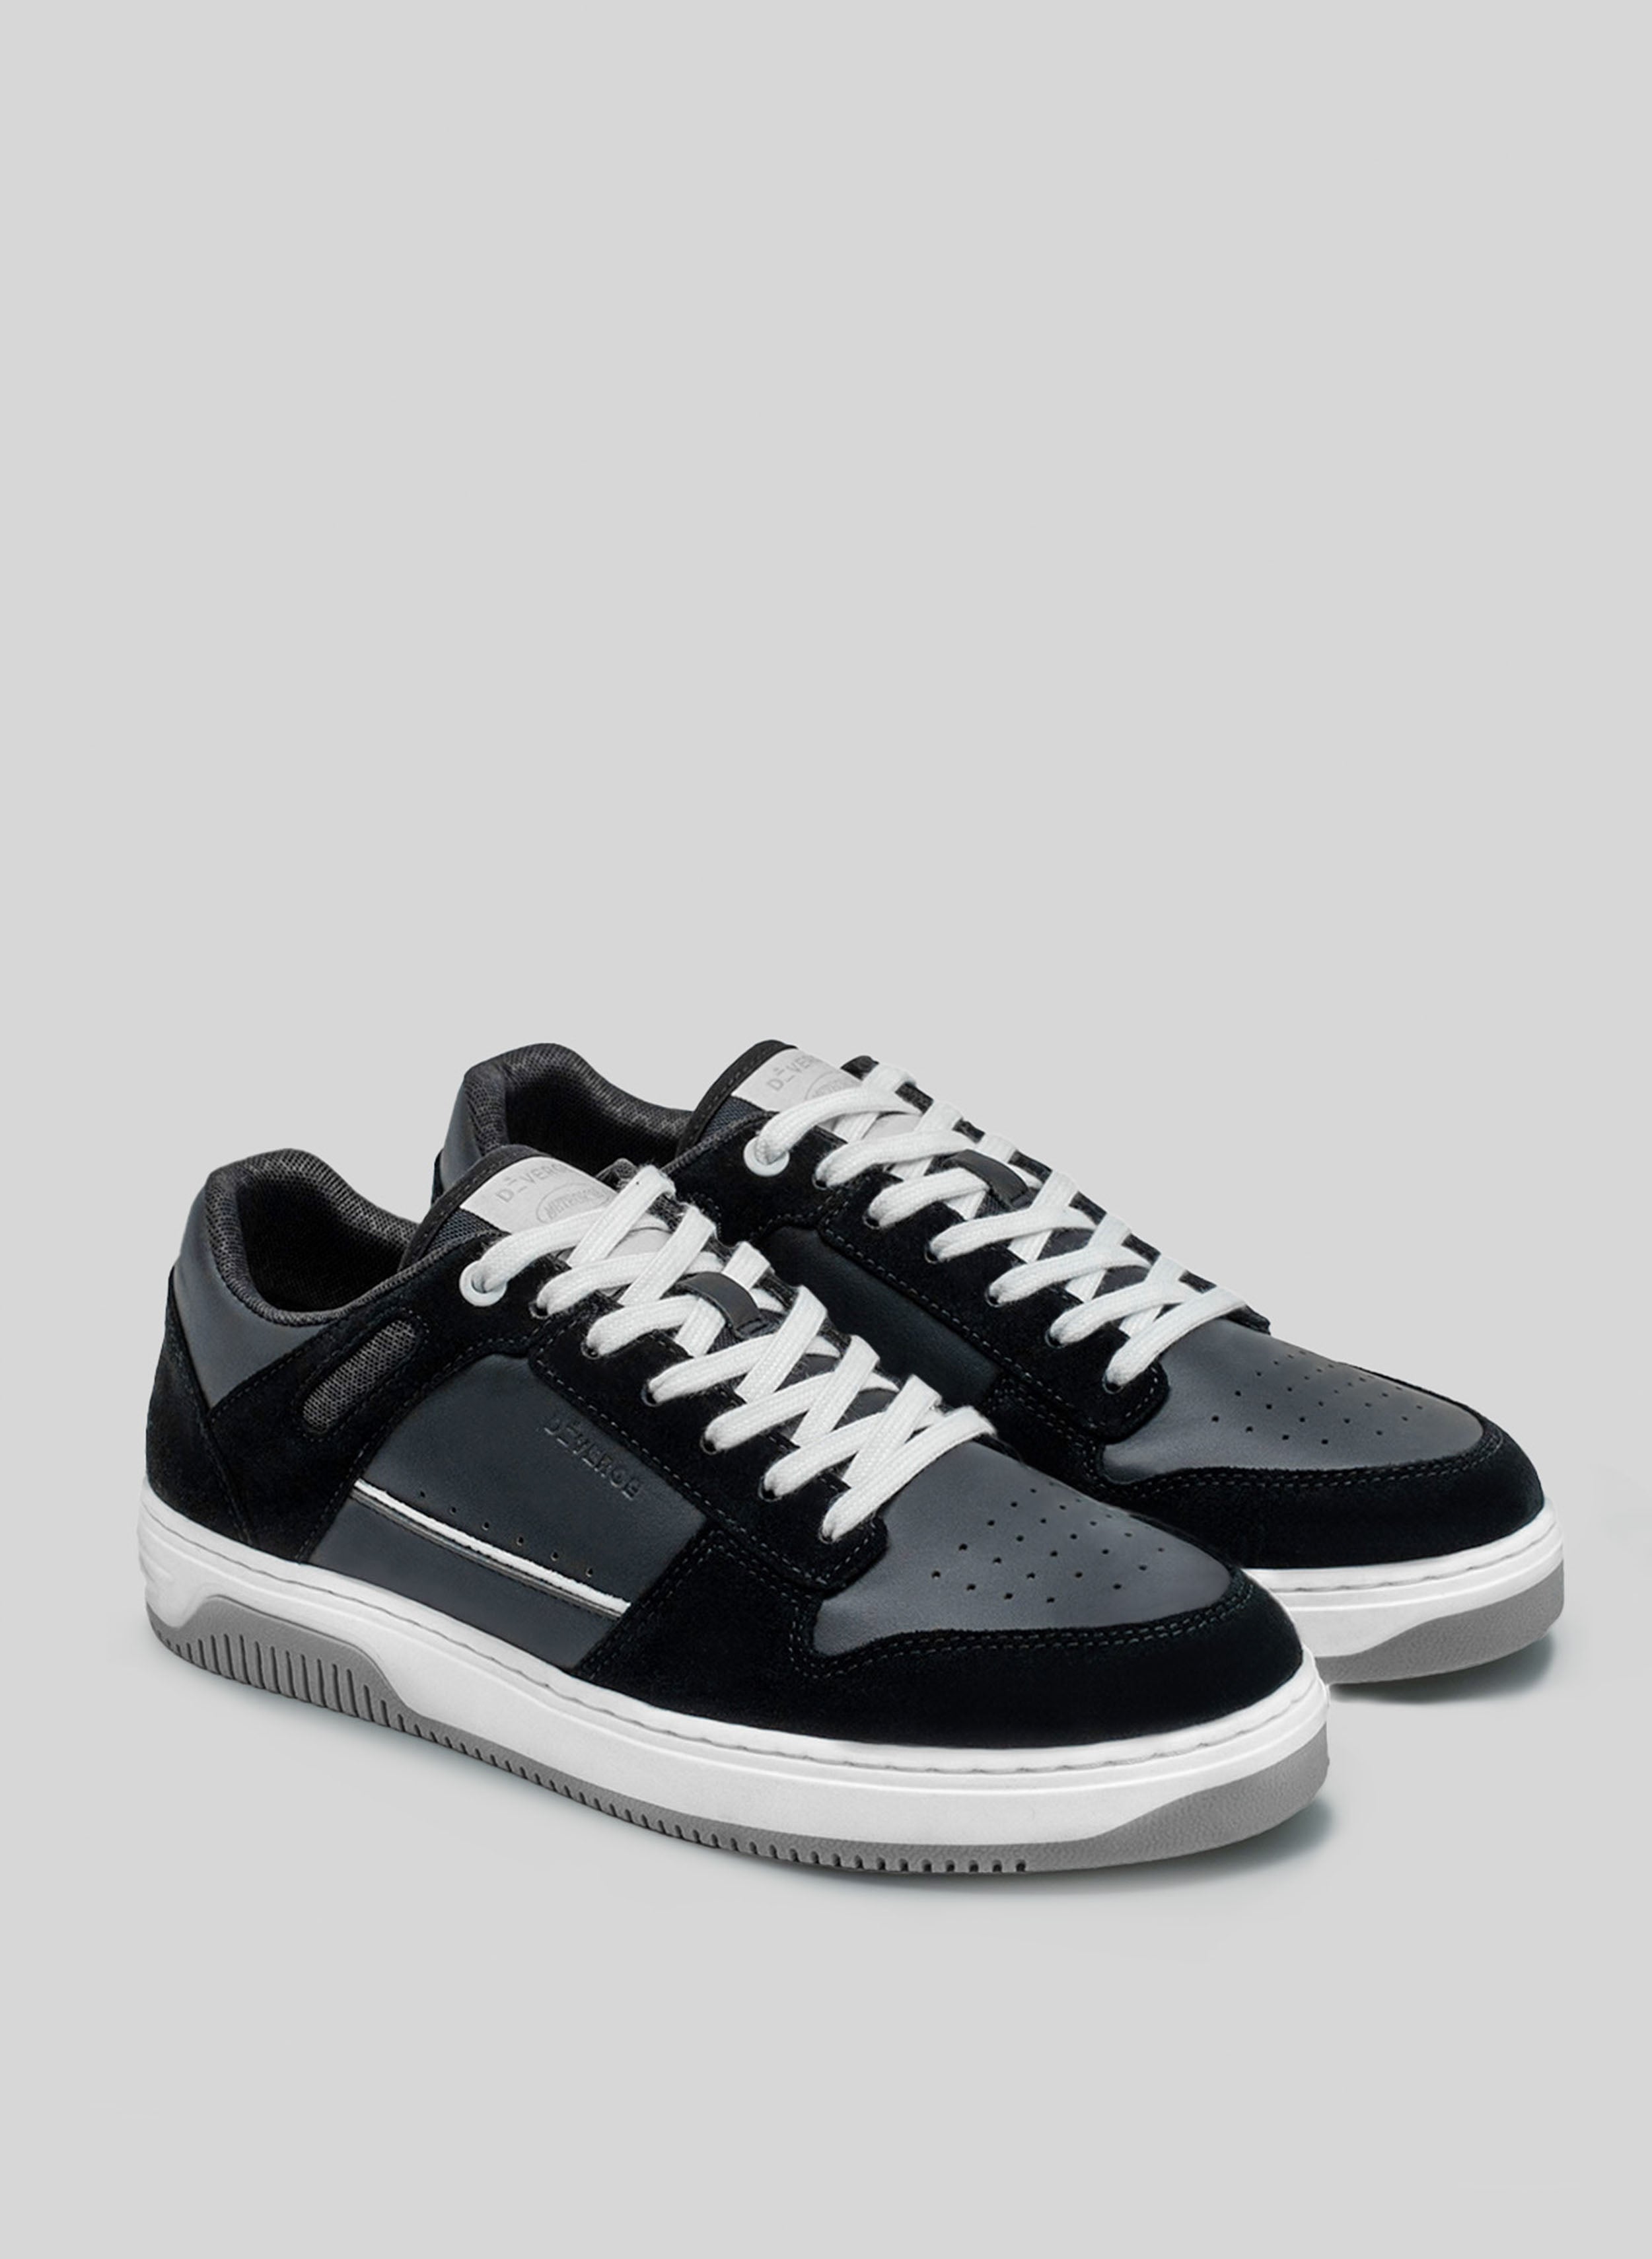 sneakers noir et blanc avec semelle grise par Diverge, promouvant l'impact social et les chaussures personnalisées à travers le projet imagine. 